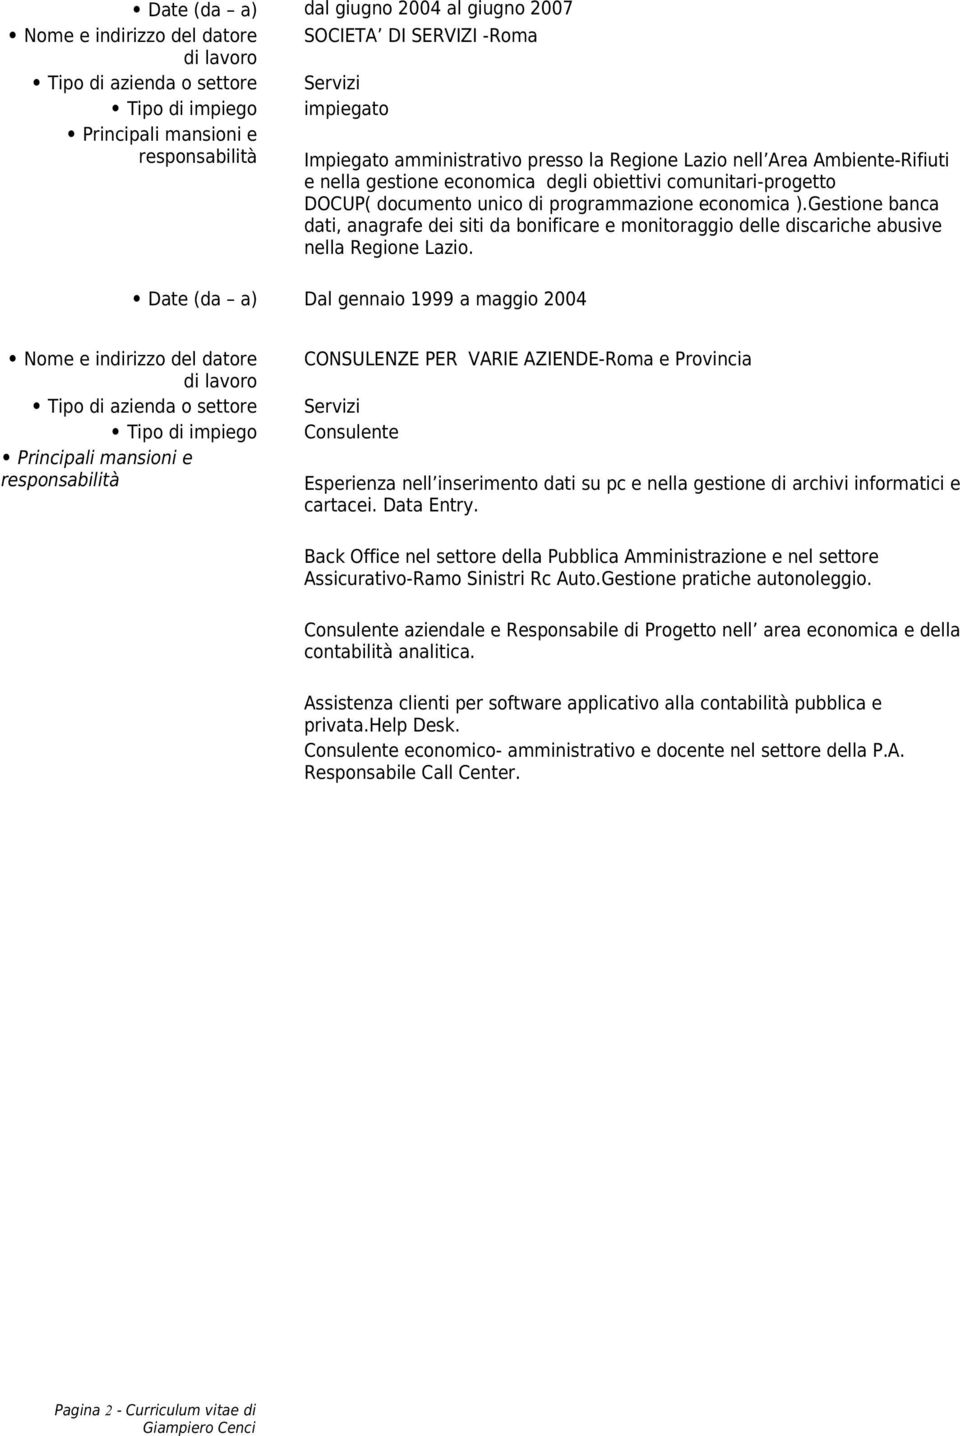 Gestione banca dati, anagrafe dei siti da bonificare e monitoraggio delle discariche abusive nella Regione Lazio.